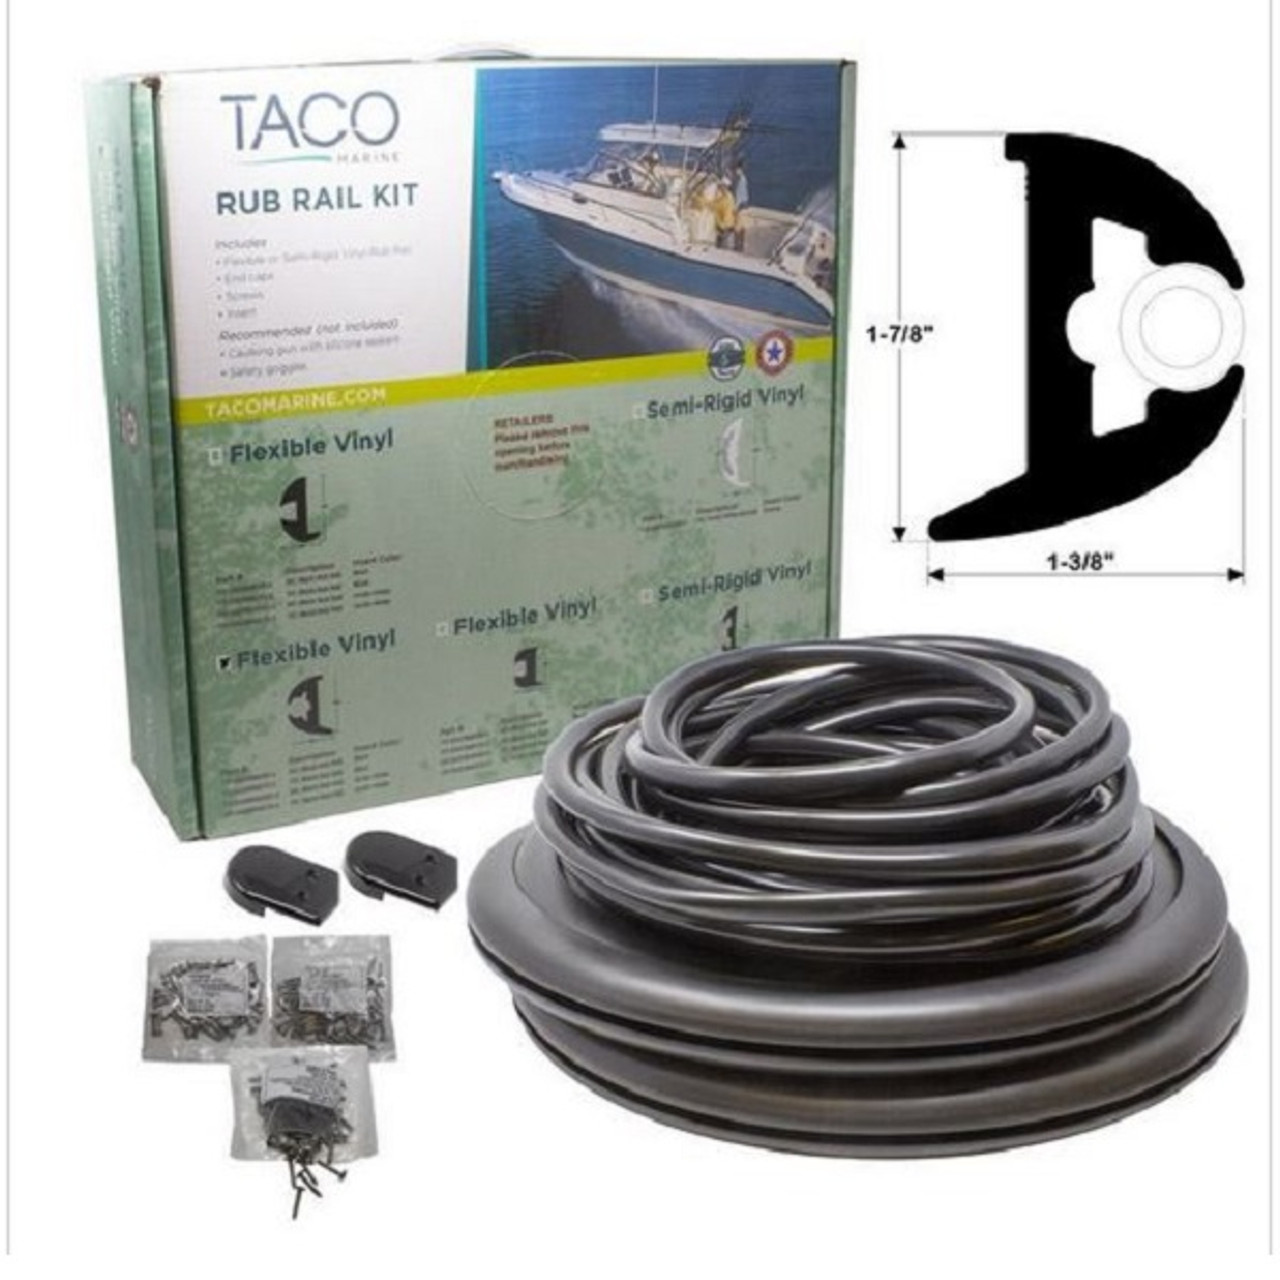 TACO Rub Rail Kit 1-3/8 x 1-7/8 x 50